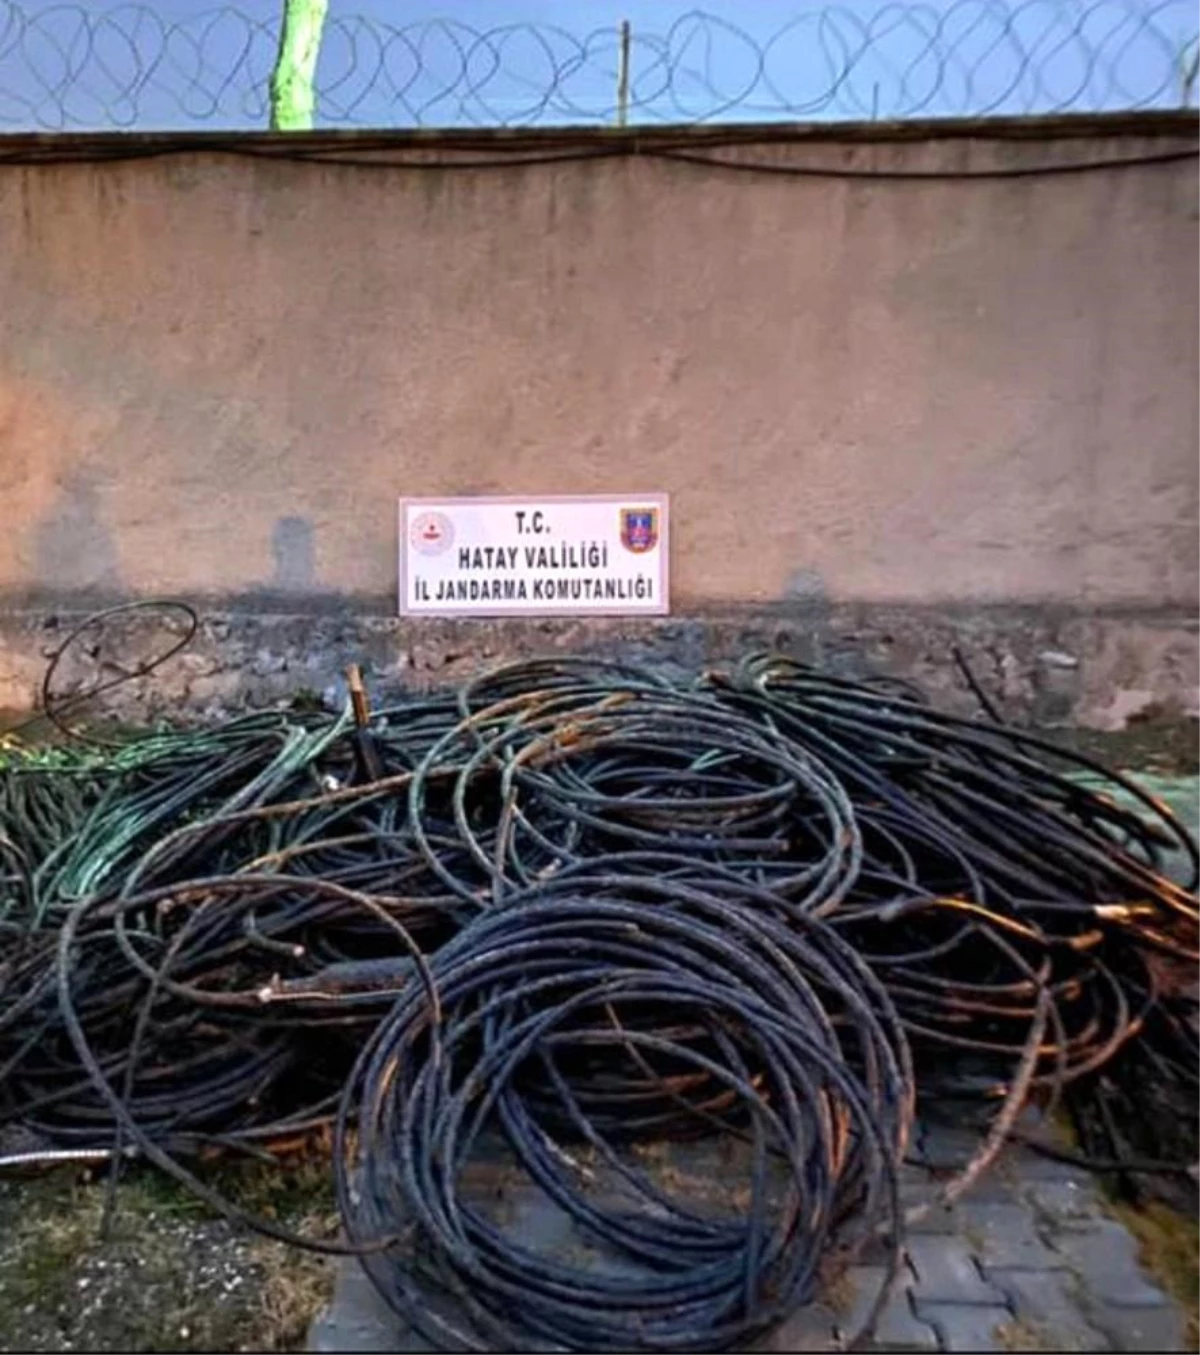 Kamyonetin kasasında 1100 kilo bakır kablo ele geçirildi